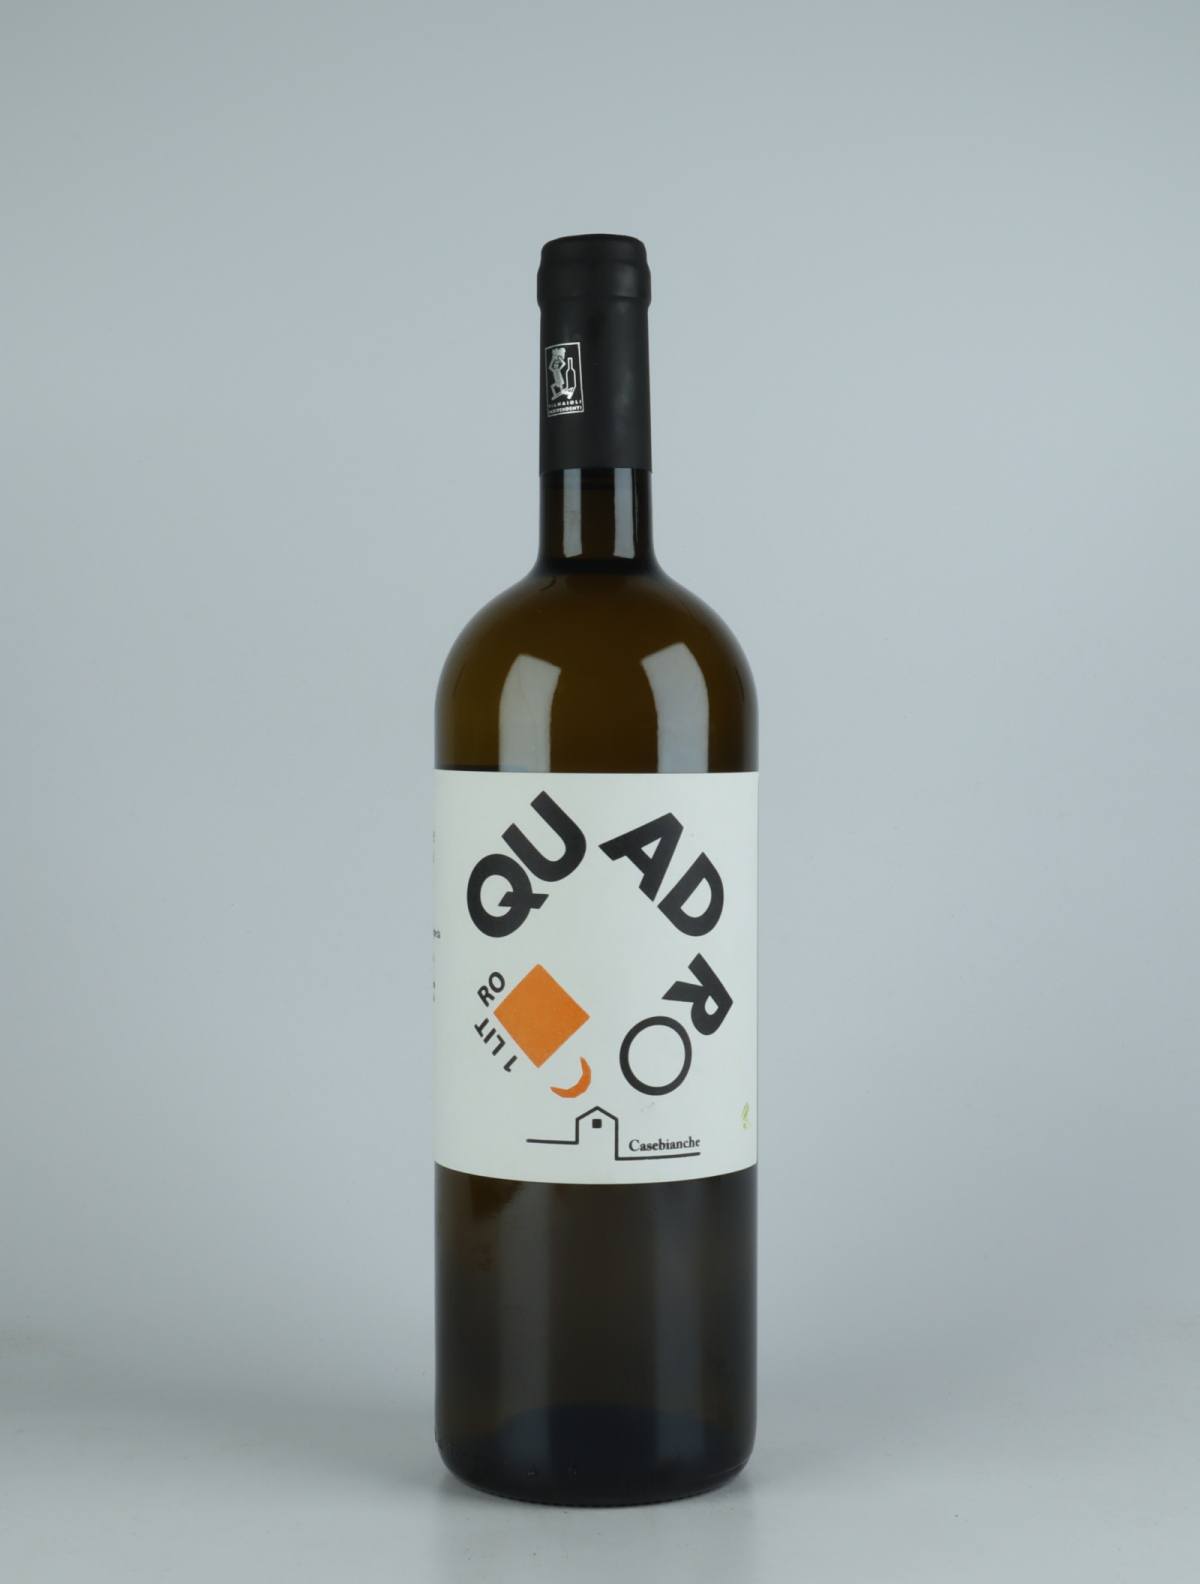 A bottle 2021 Quadro Litro Bianco White wine from Casebianche, Campania in Italy